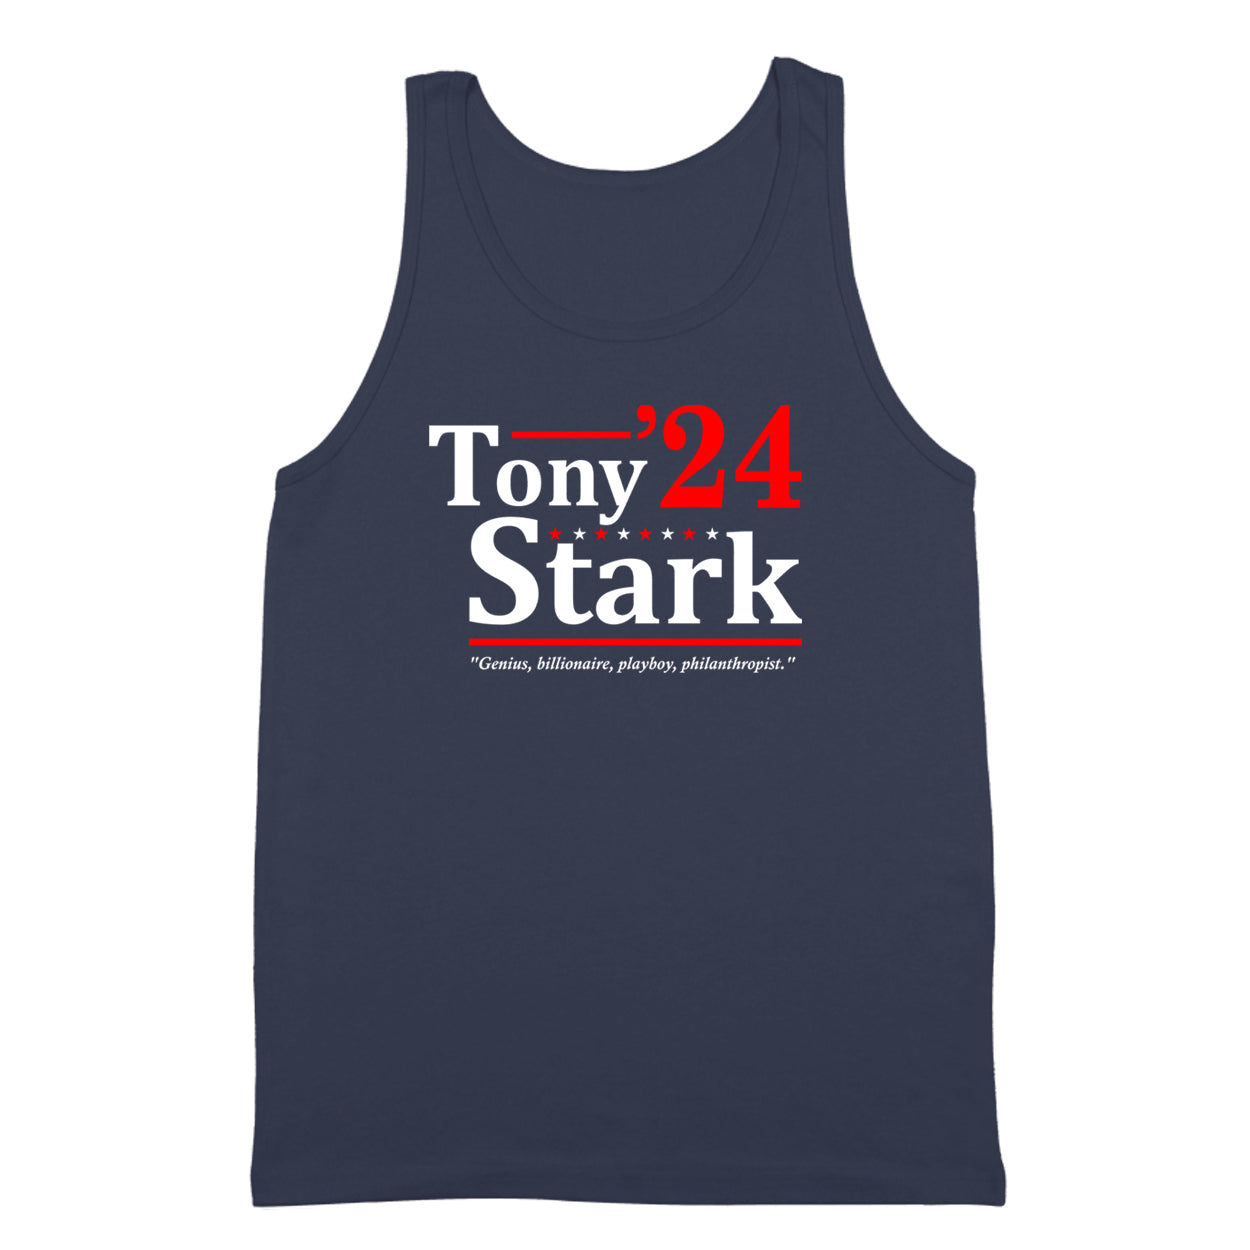 Tony Stark 2024 Election Tshirt - Donkey Tees